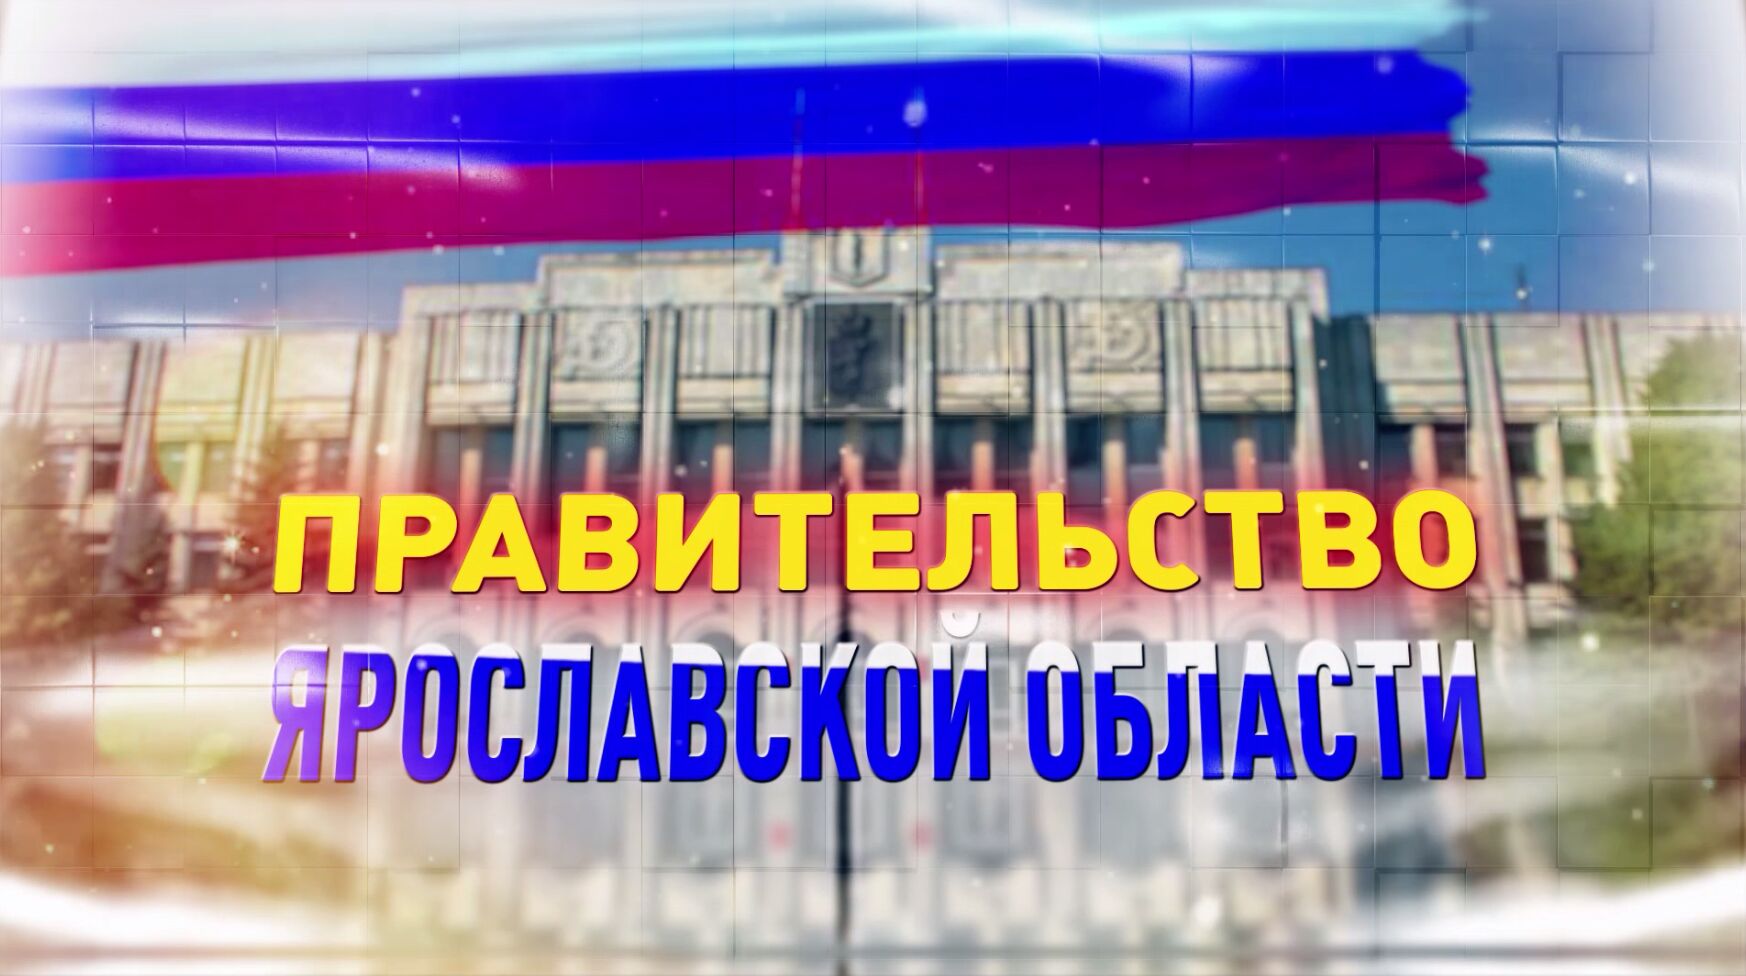 Трансляция заседания правительства Ярославской области